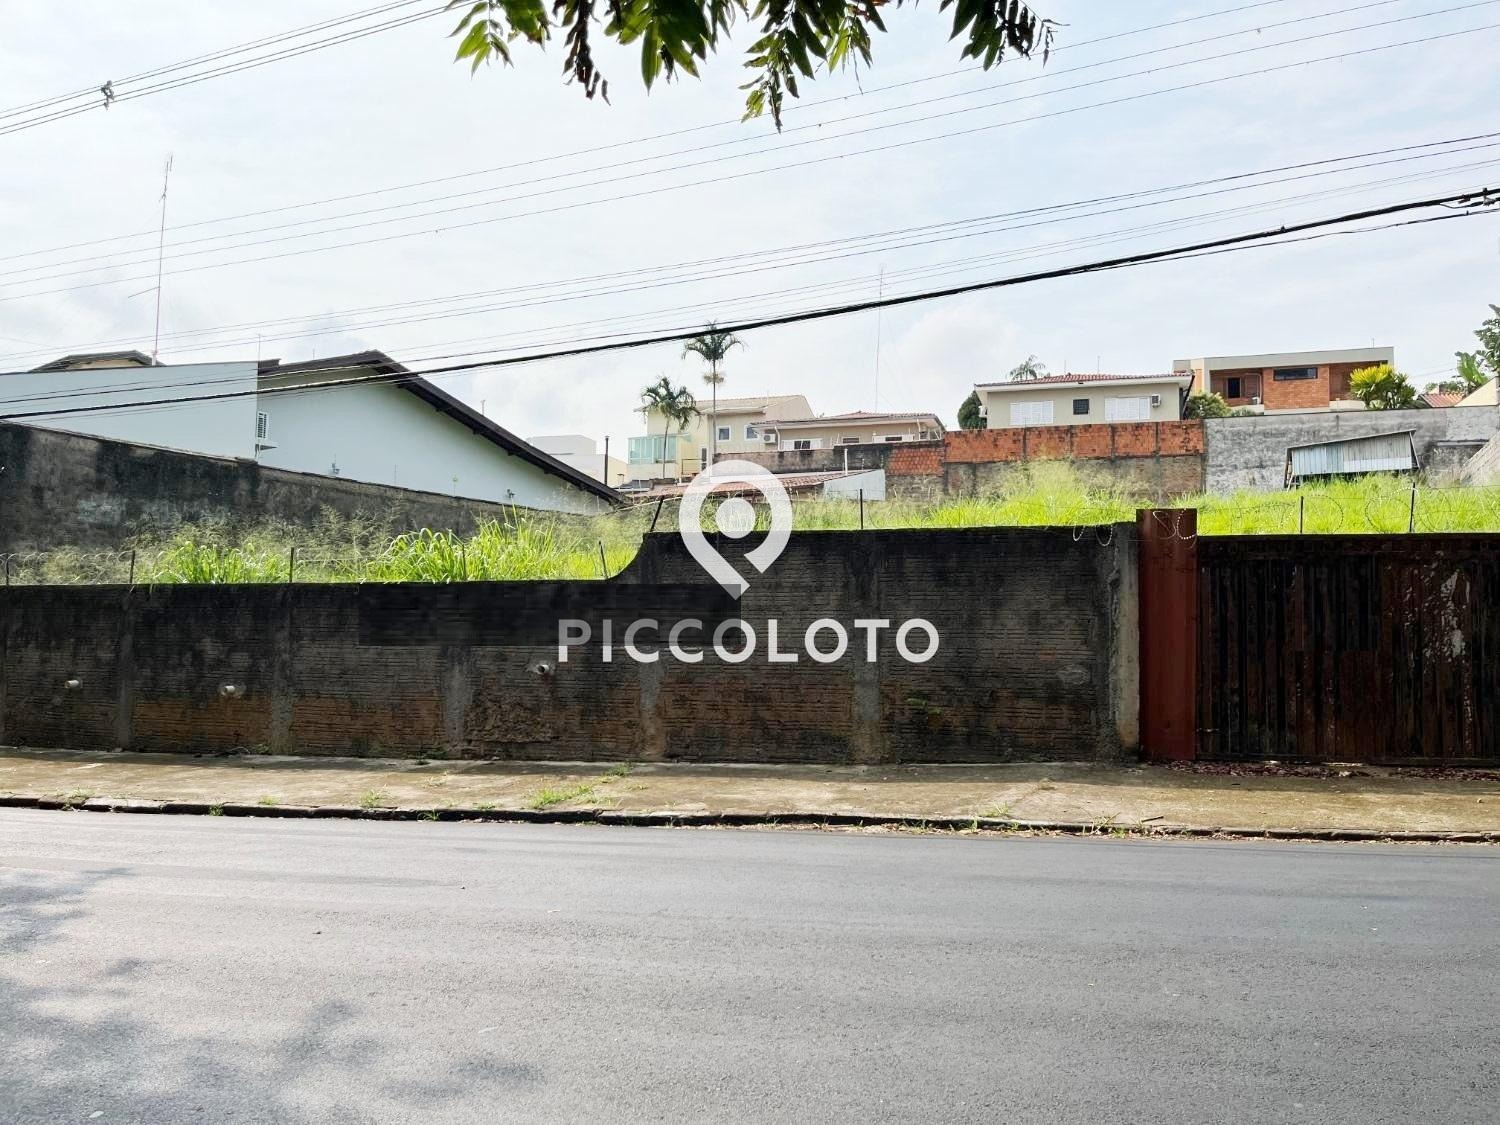 Piccoloto -Terreno à venda no Parque Nova Campinas em Campinas